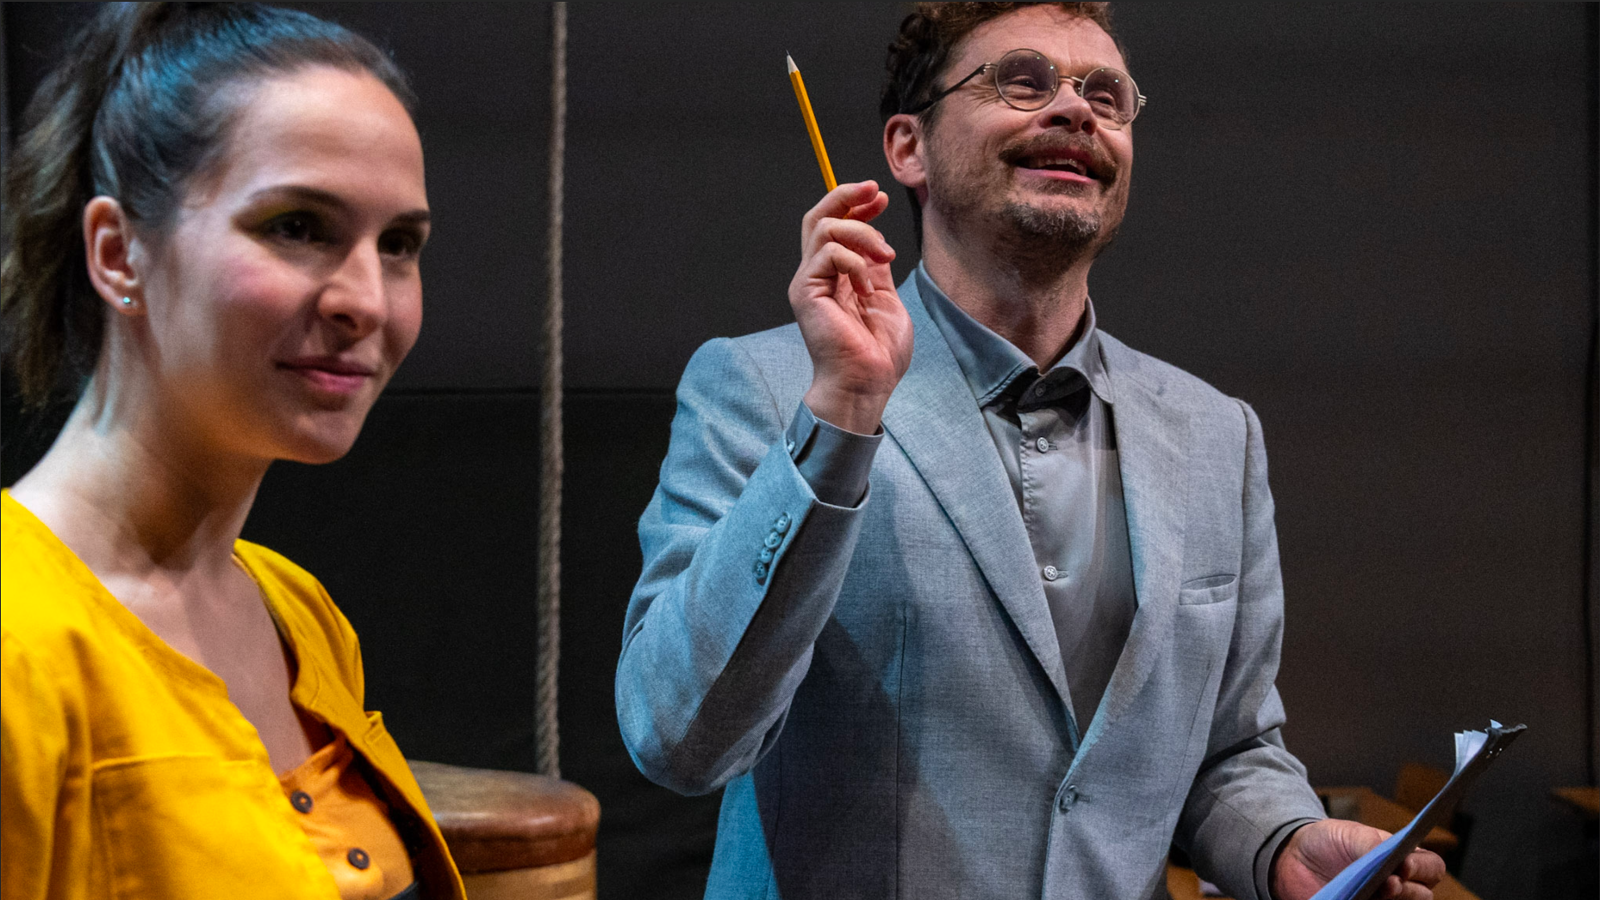 Kuvassa on Jussi Lehtonen opettajana harmaassa takissa ja osoittaa ylöspäin kynä kädessään.  Vasemmalla on Denisa Snyder keltaisessa puserossa  ja katsoo vinosti oikealle.